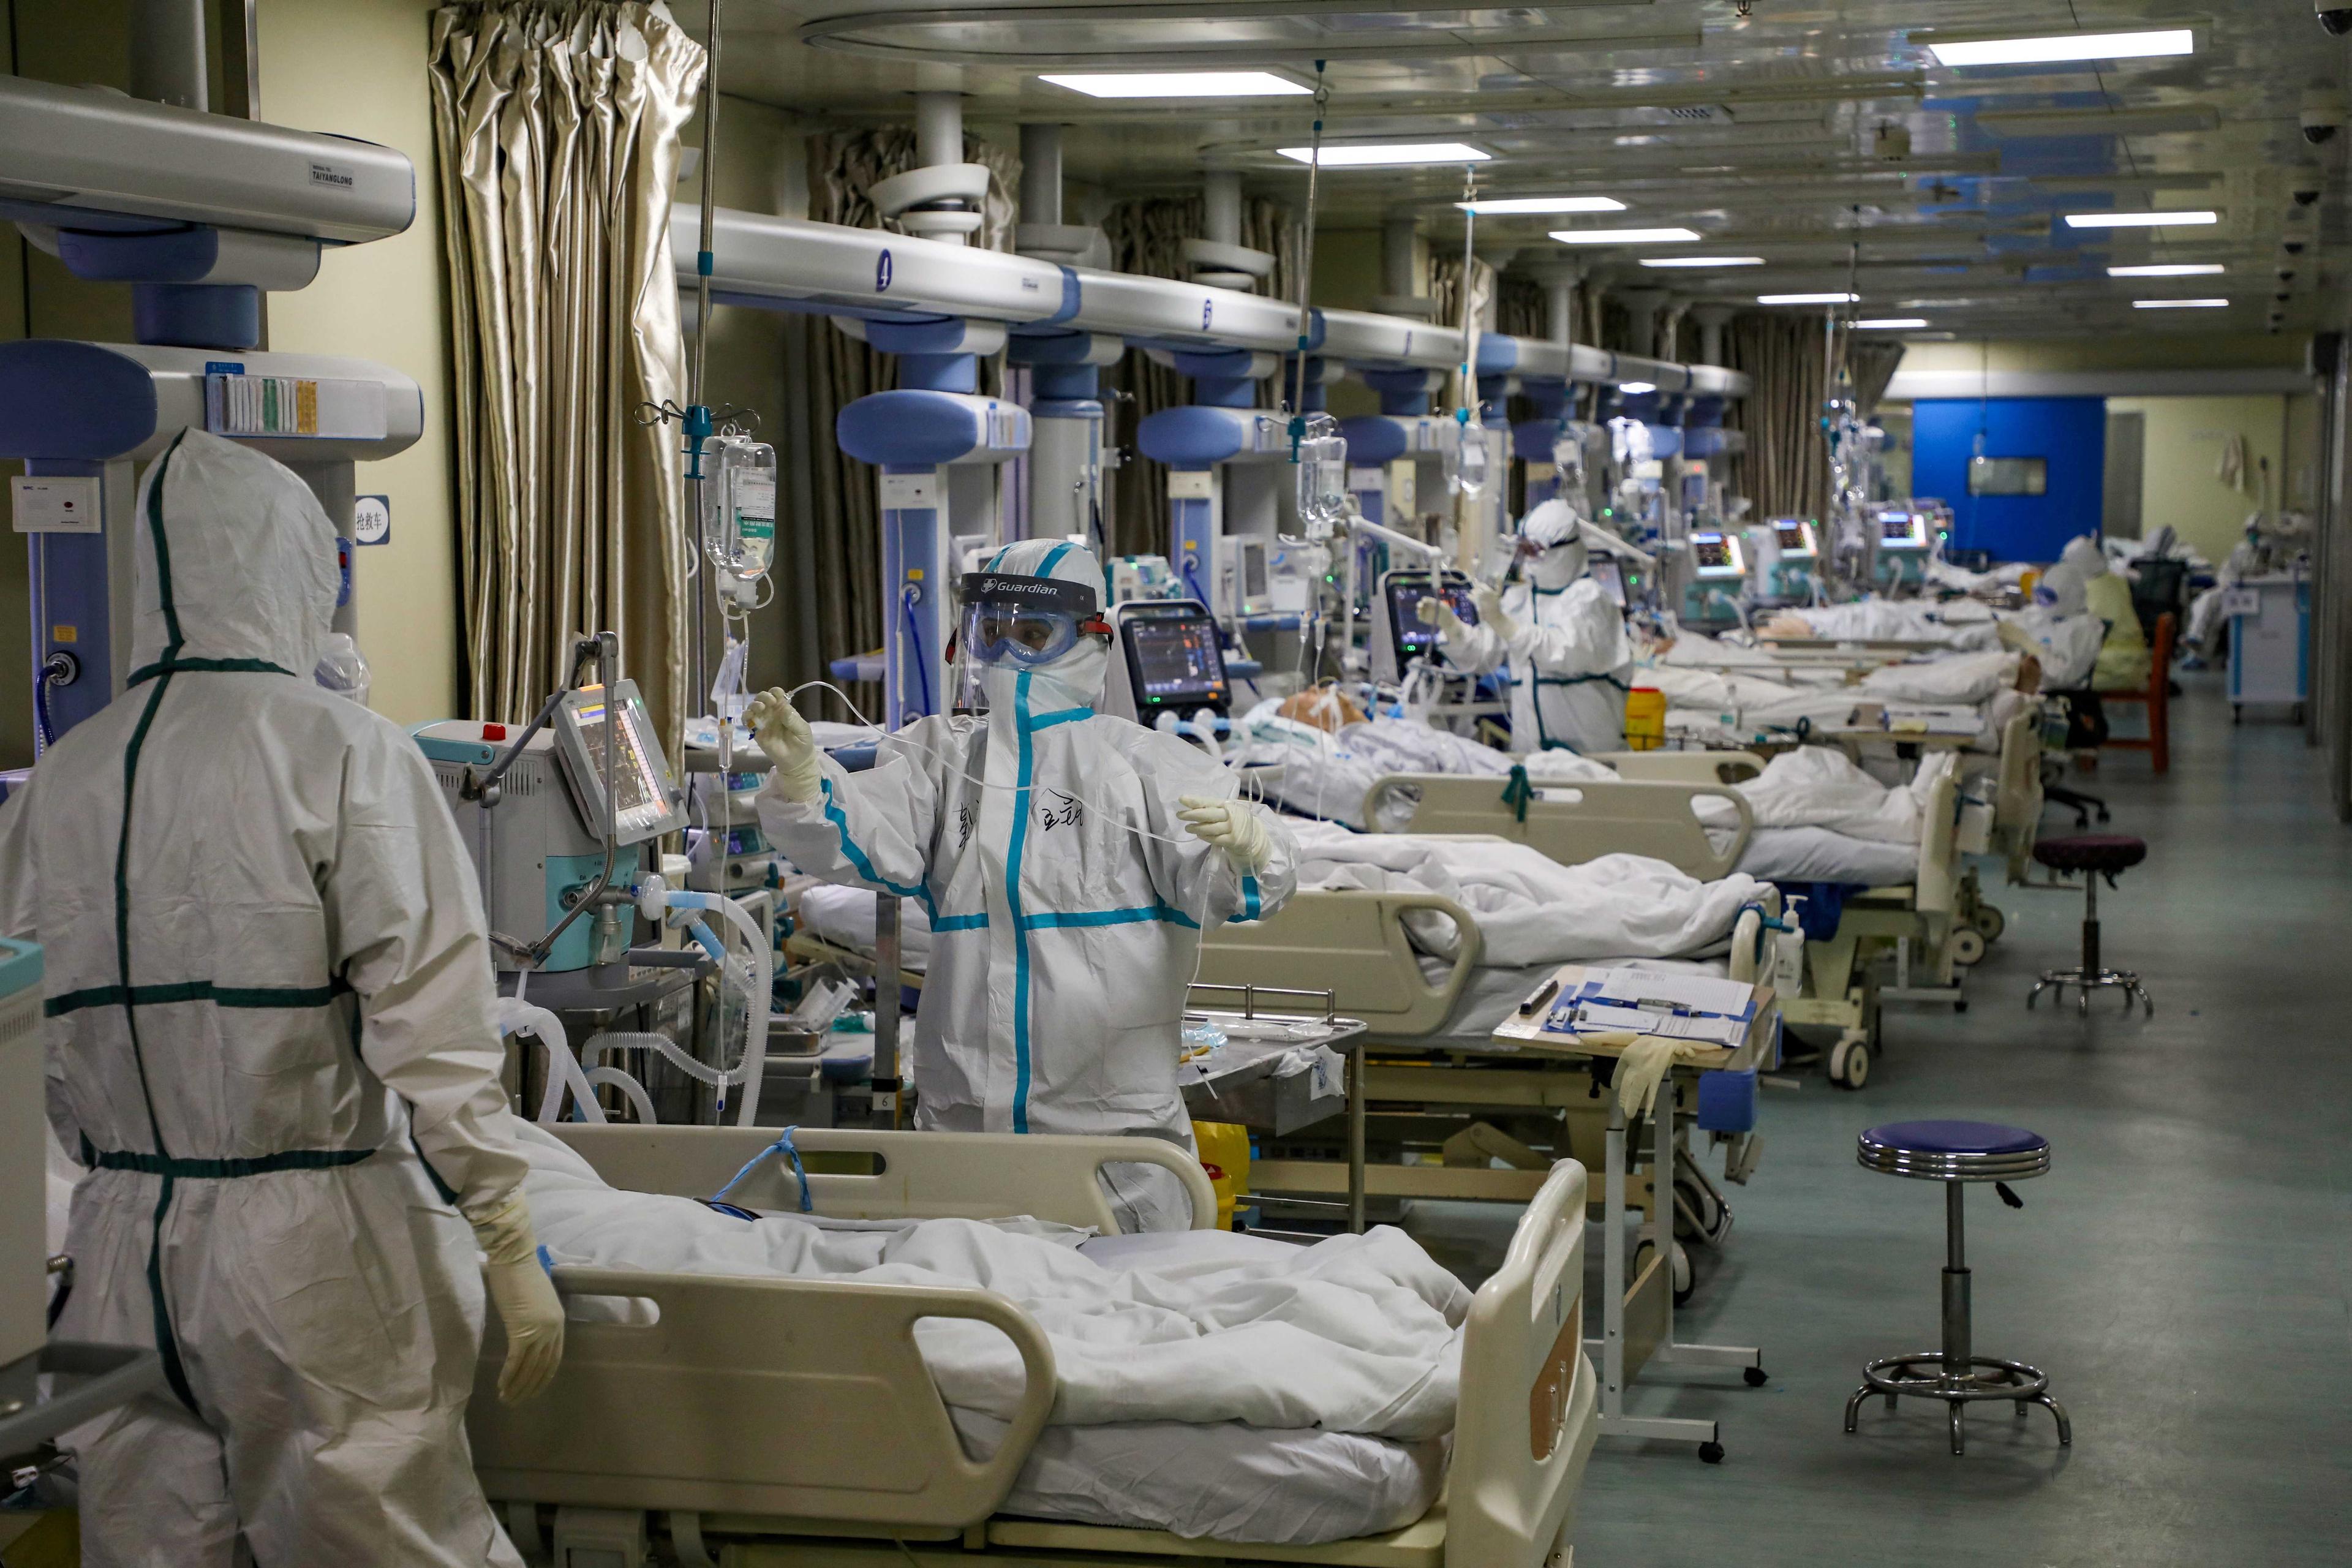 Pengamal perubatan memakai sut pelindung diri lengkap ketika berada di Unit Rawatan Rapi (ICU) yang dikhususkan kepada pesakit Covd-19 di sebuah hospital di Wuhan, China, 6 Februari 2020. Gambar: Reuters